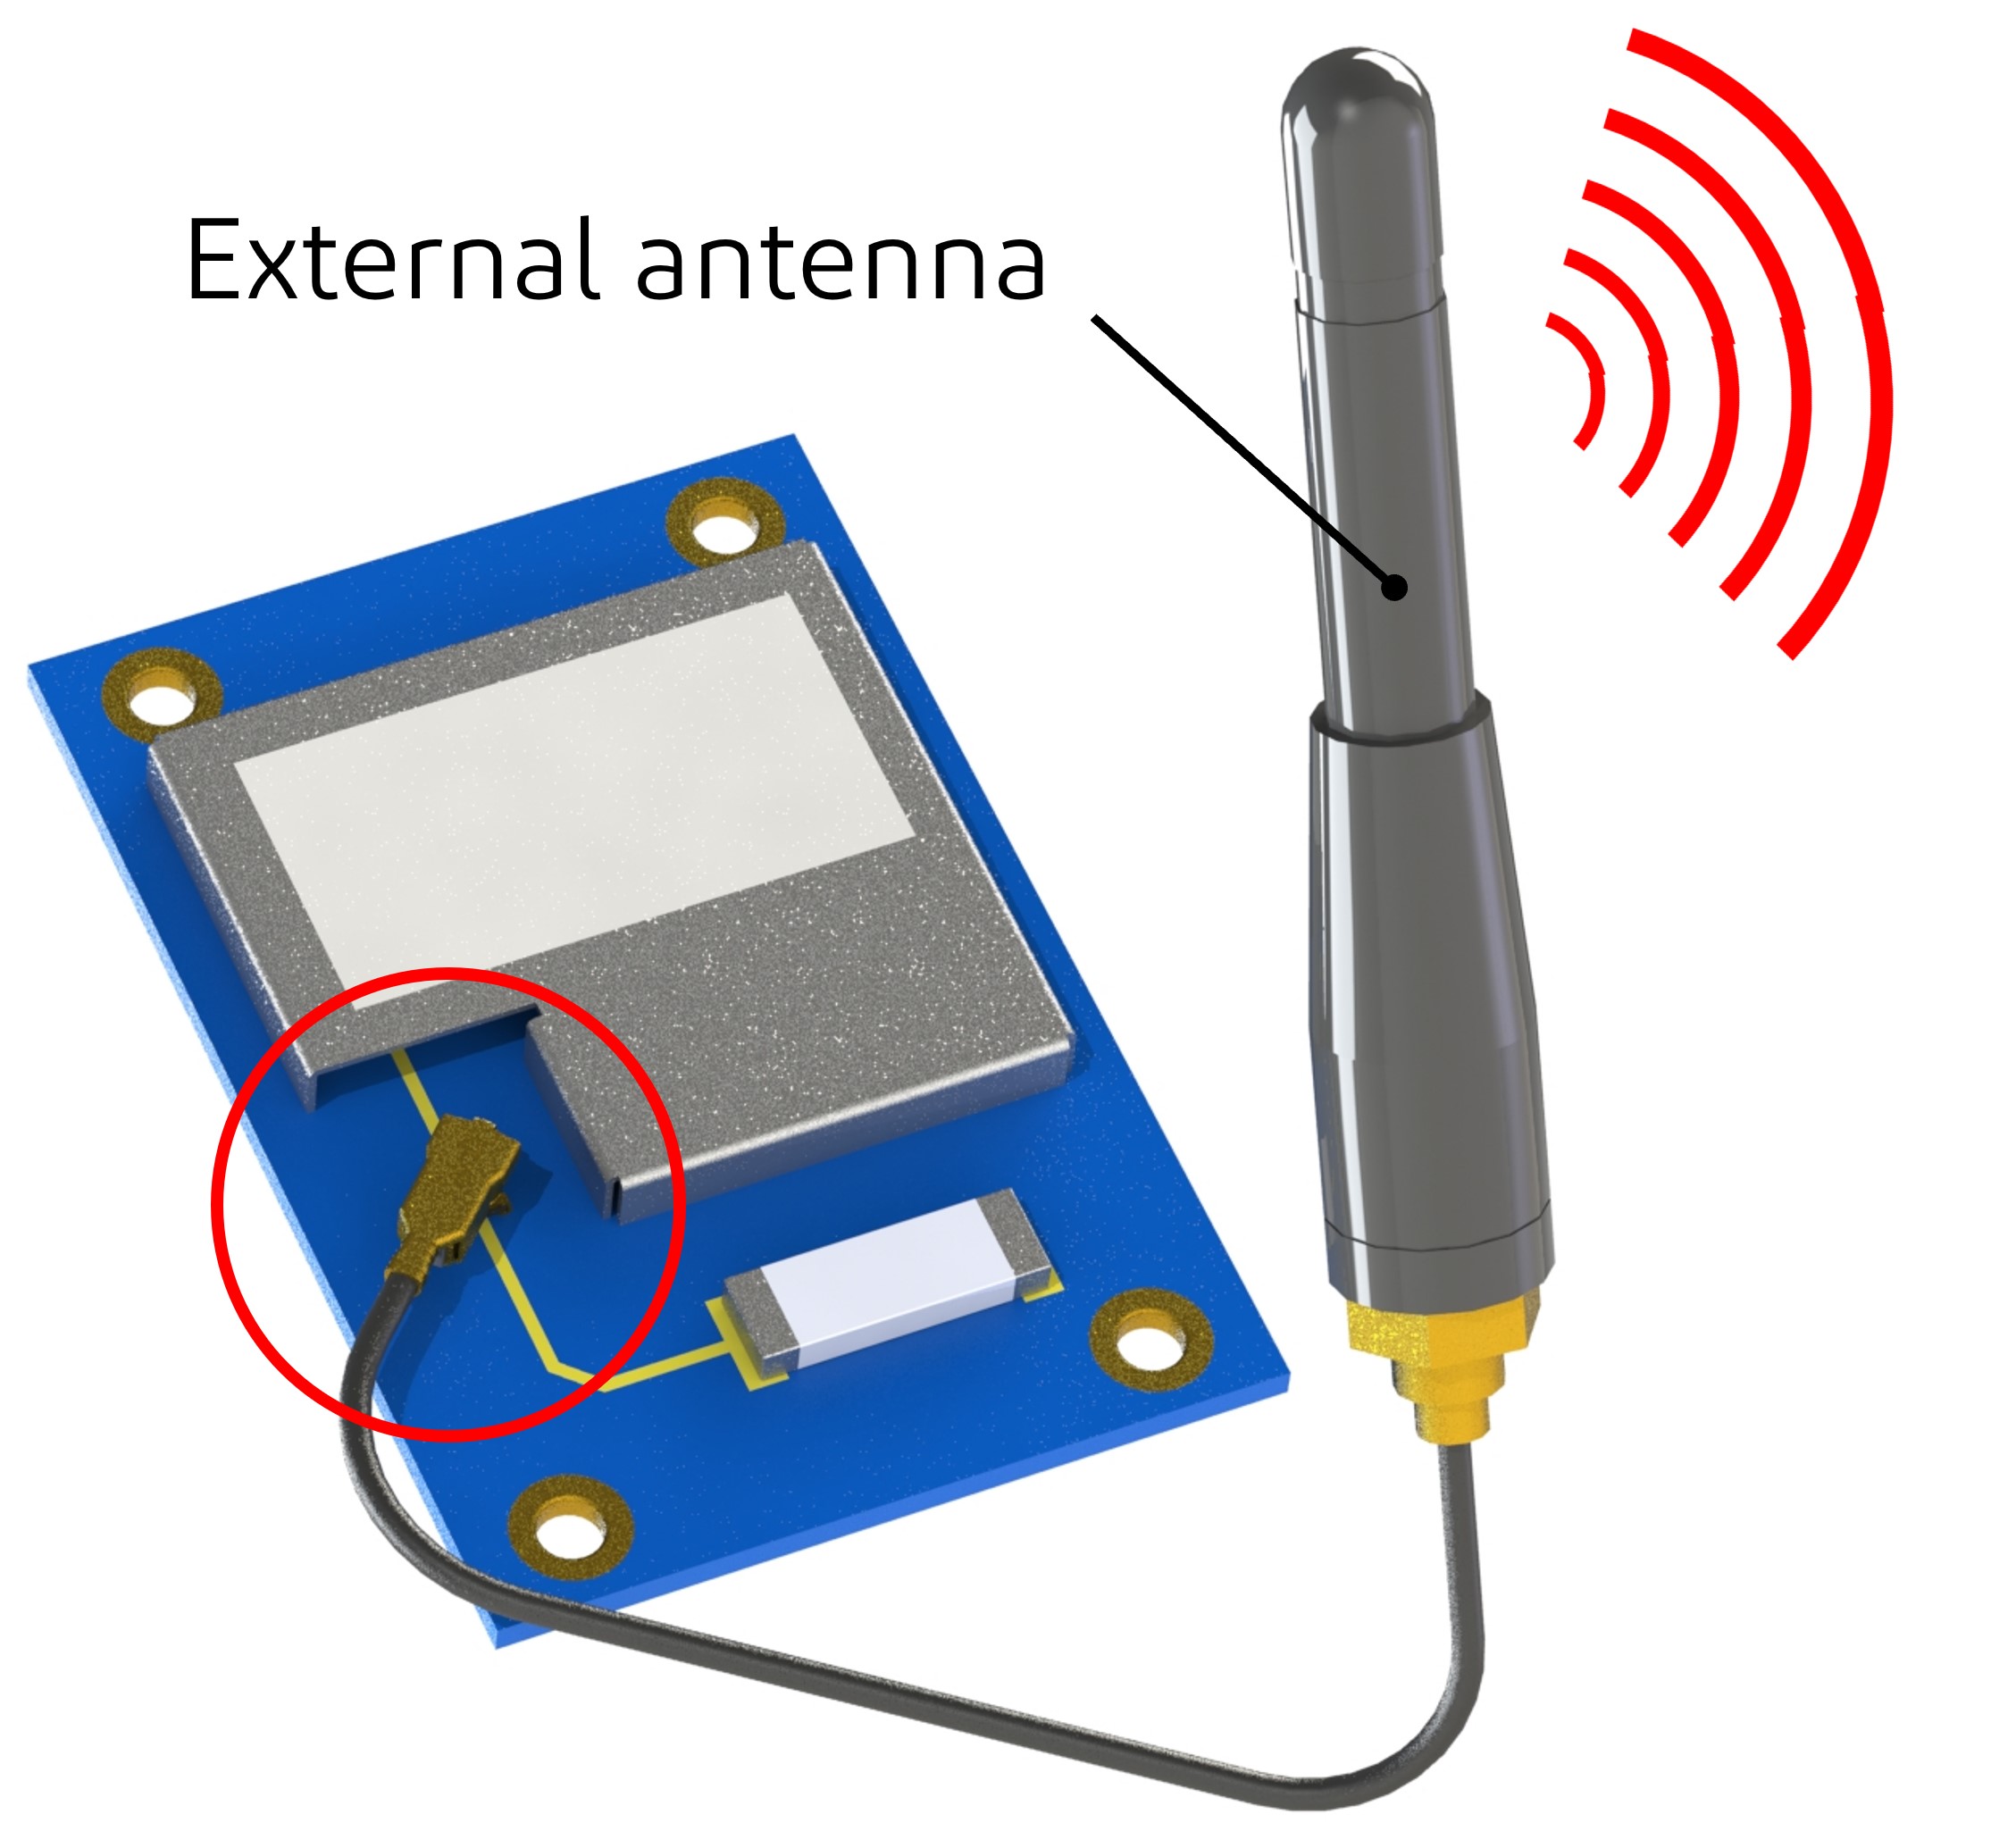 SW23 plug external antenna